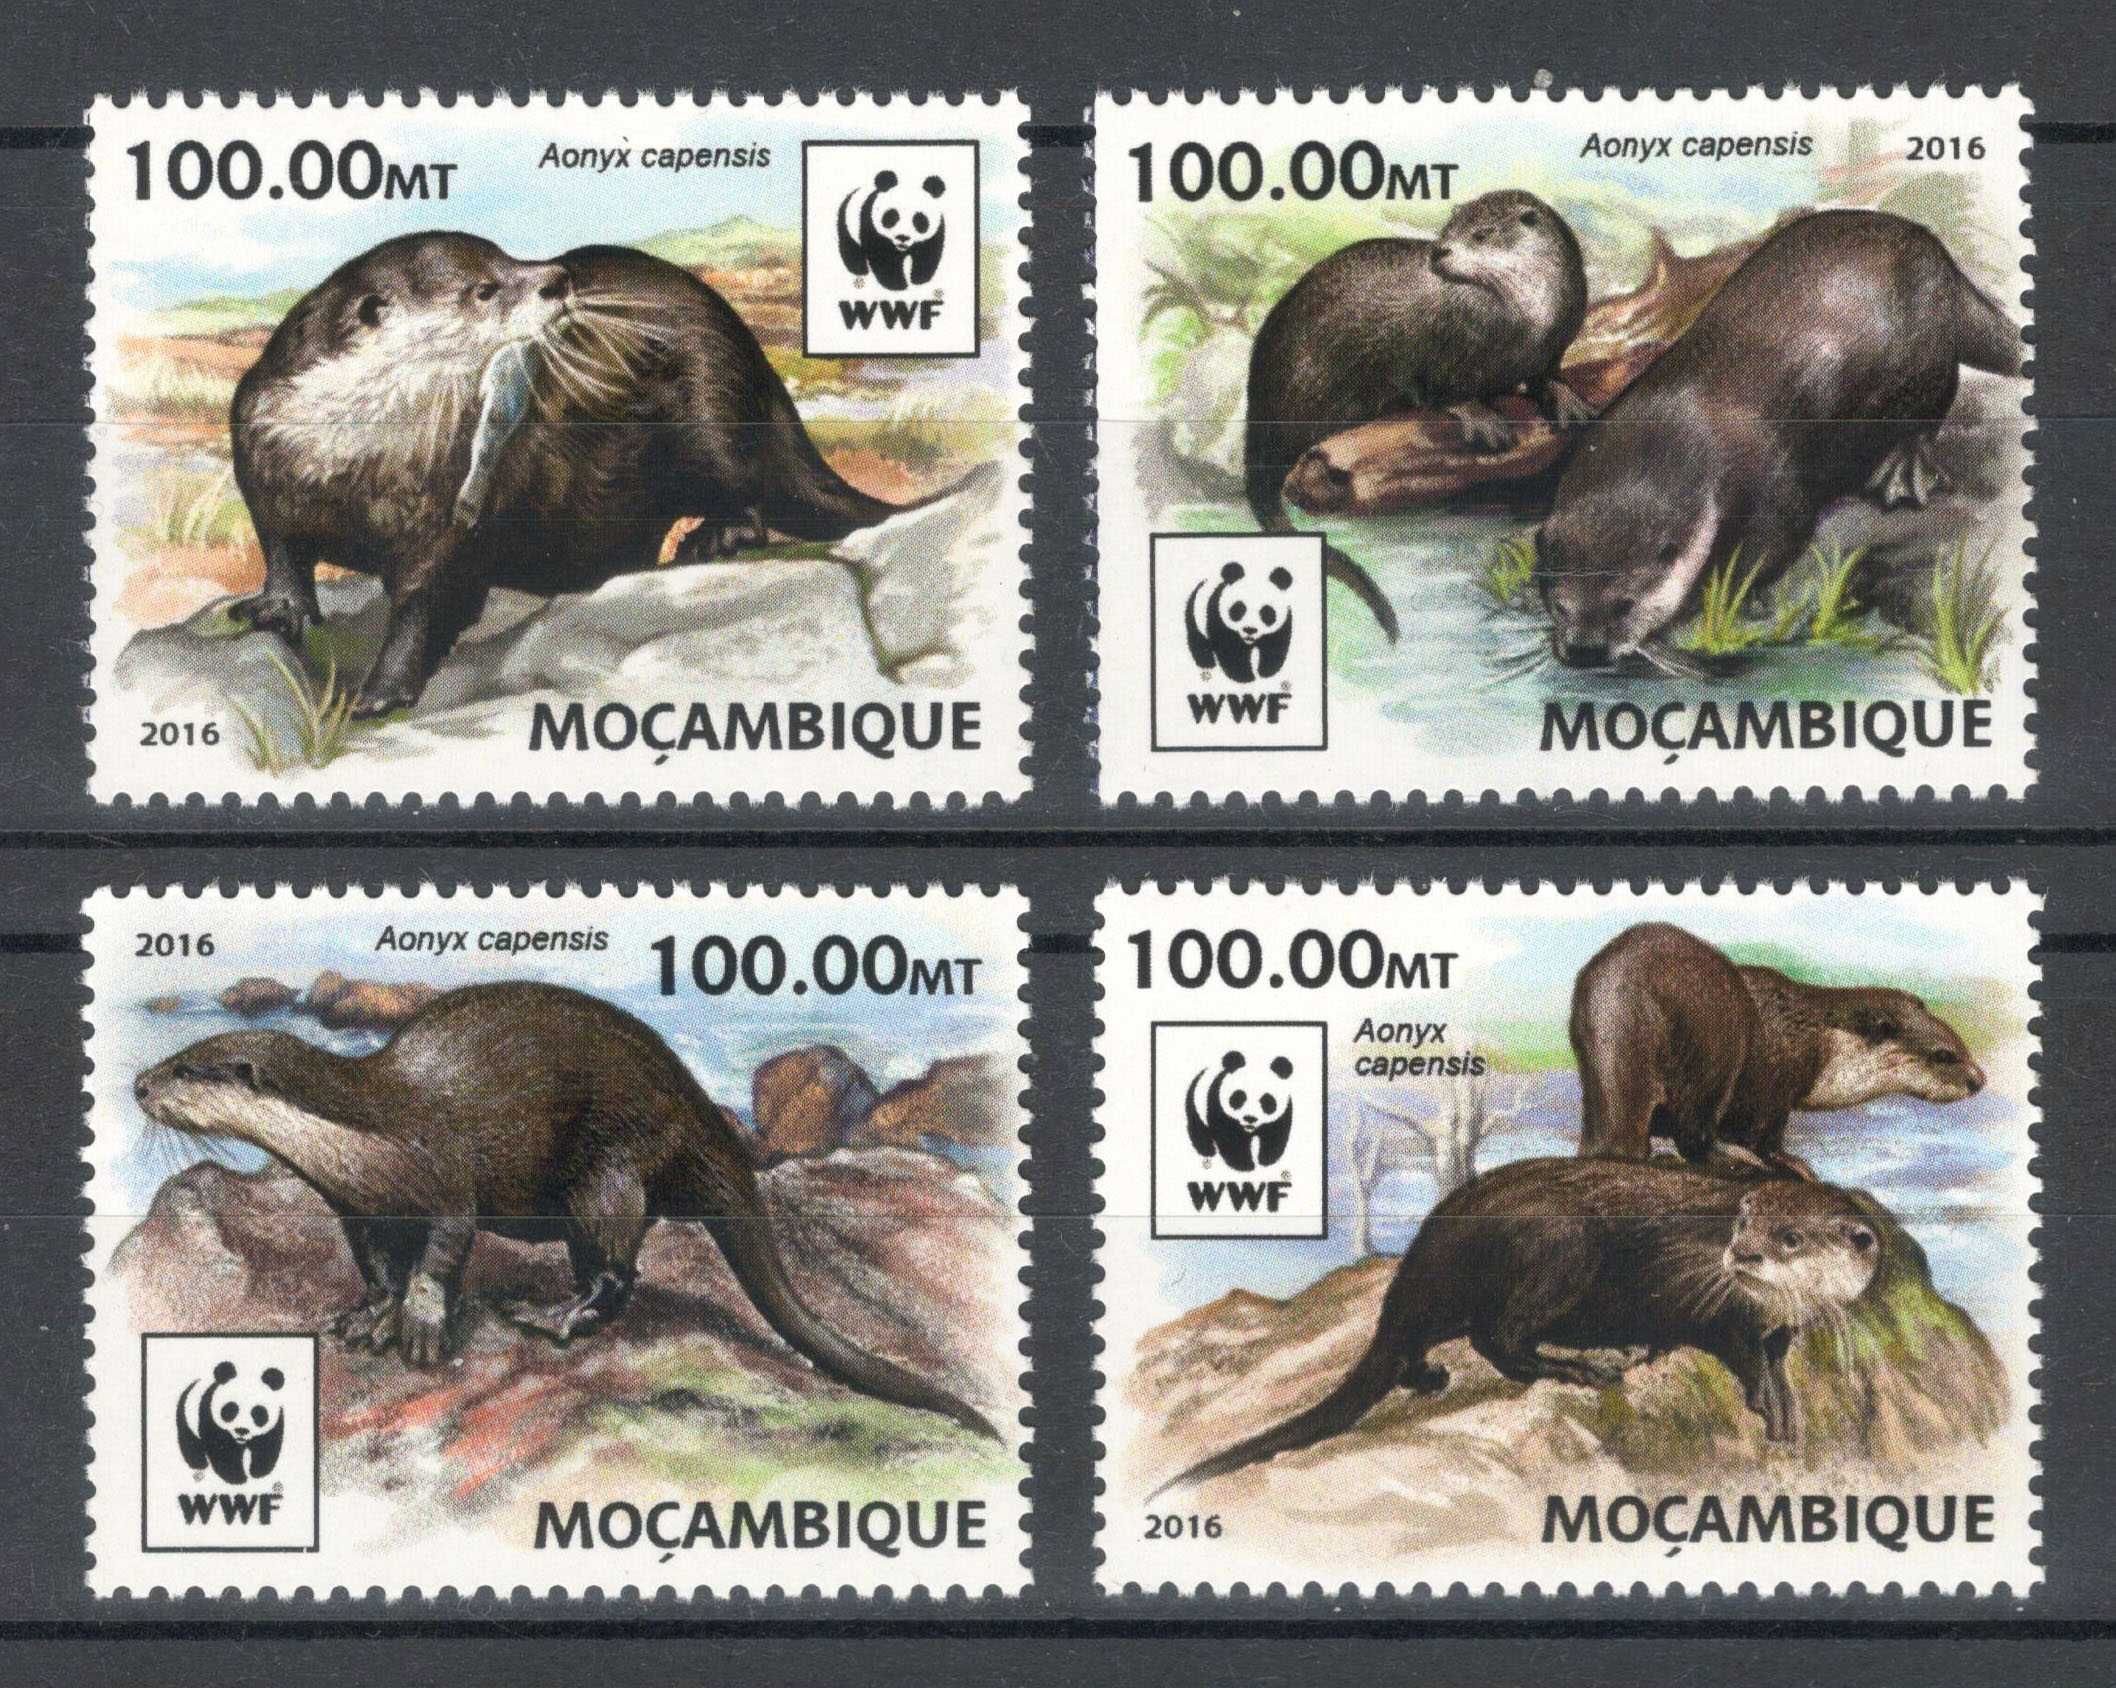 Tchad 2017 - Fauna WWF, Pasari - Serie de 4 timbre - Nestampilata mnh